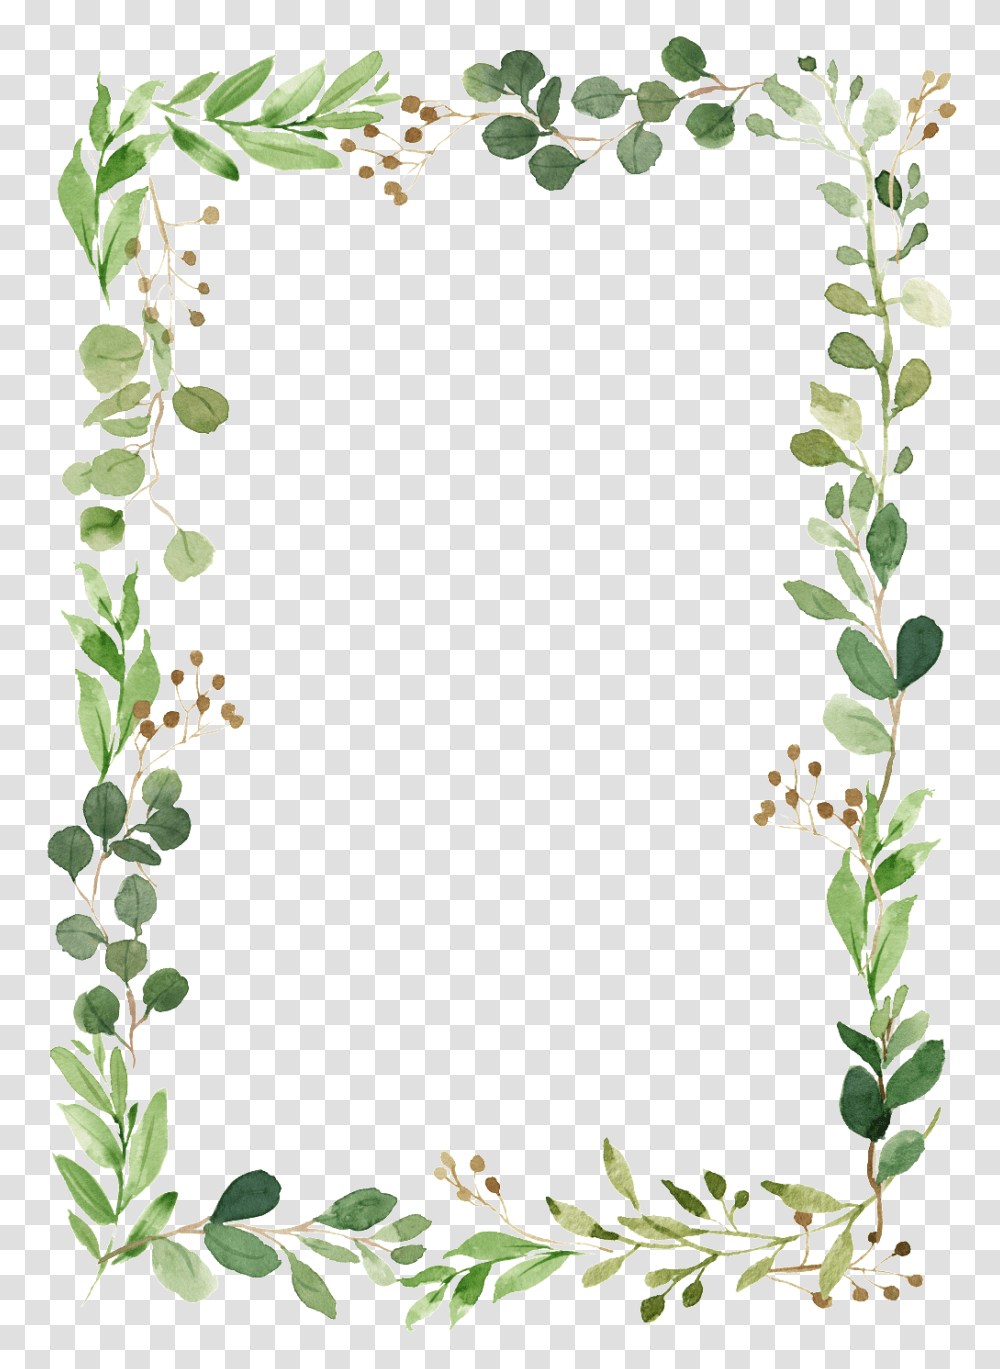 Leaf Border Background Foliage Border, Plant, Flower, Vase, Jar Transparent Png